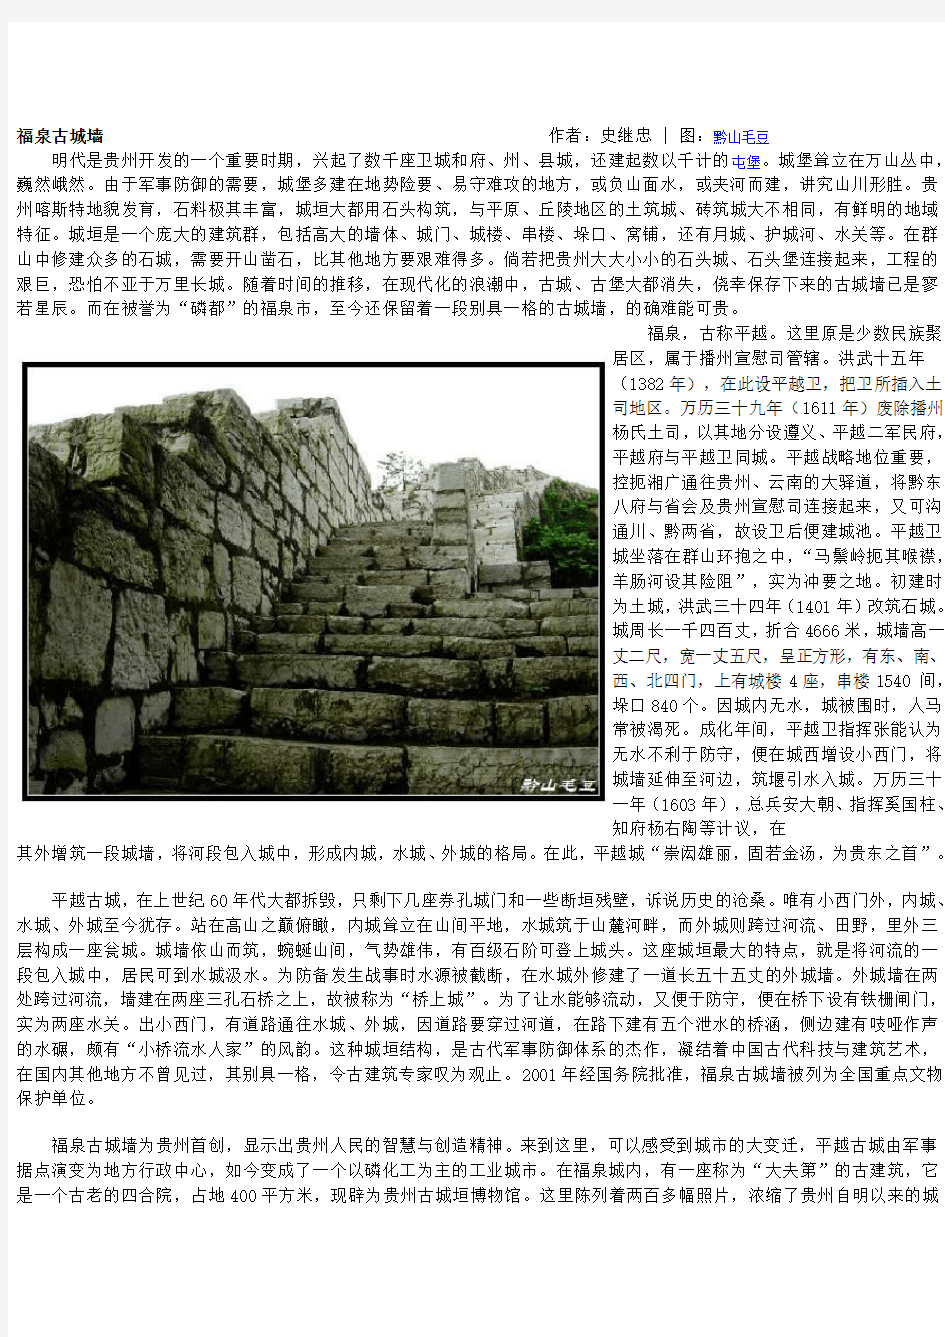 福泉古城墙